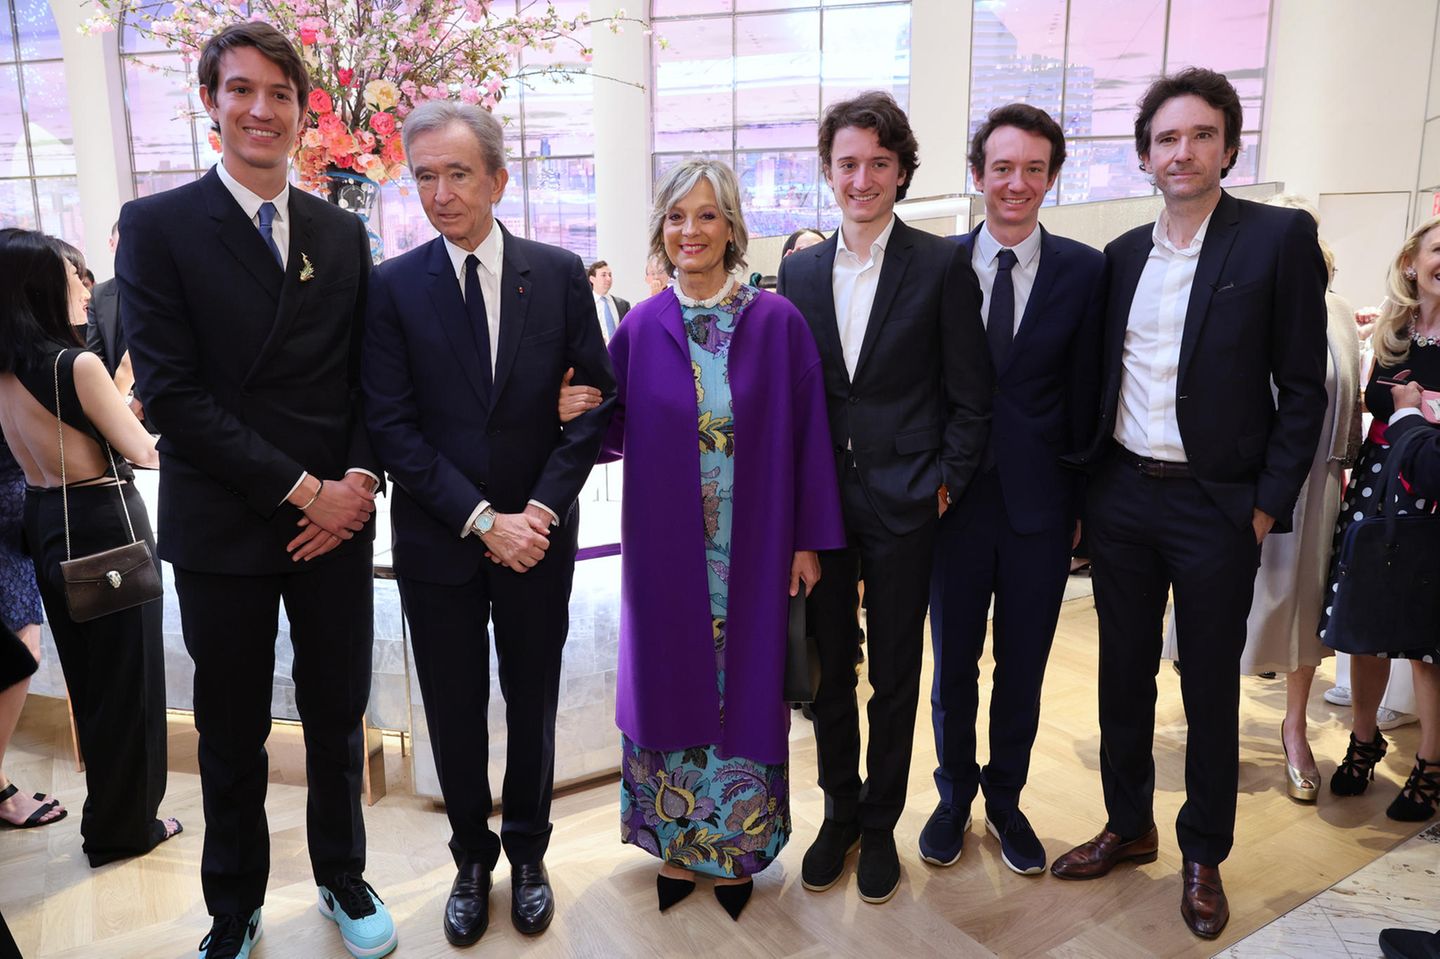 Personen: Delphine Arnault geht zu Louis Vuitton